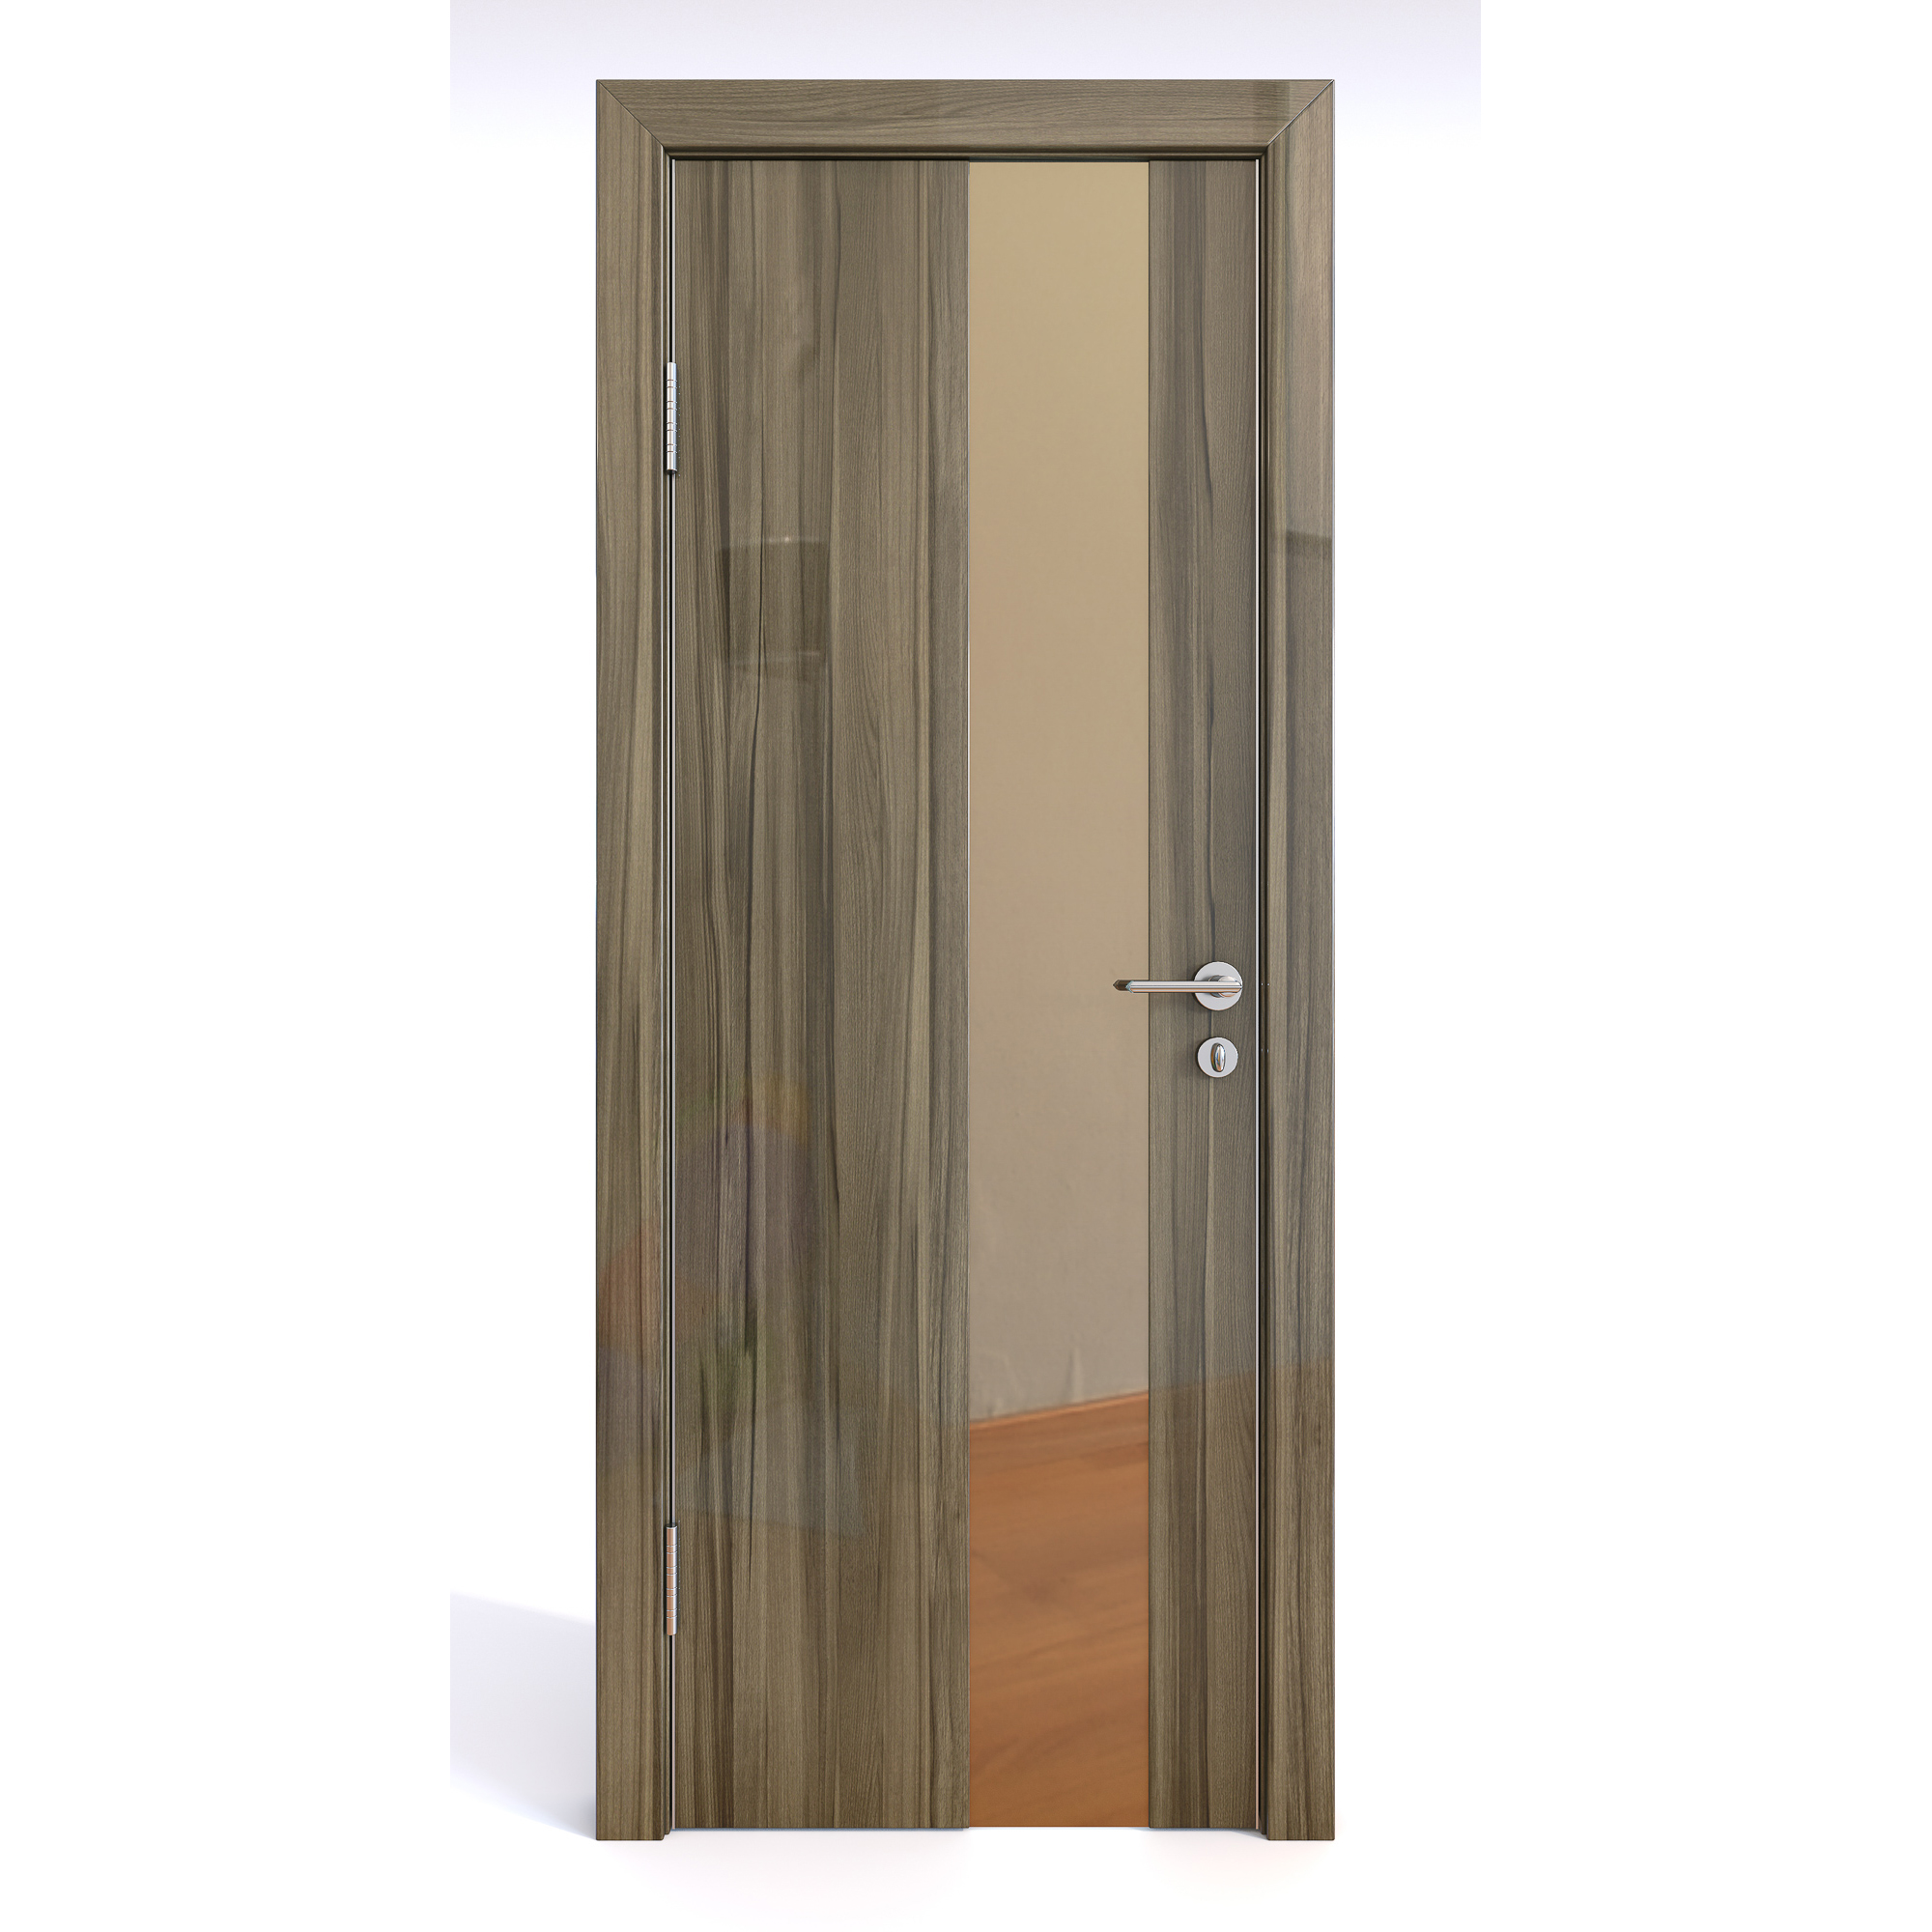 фото Межкомнатная шумоизоляционная дверь до-604/2 сосна глянец/бронза 200х60 дверная линия